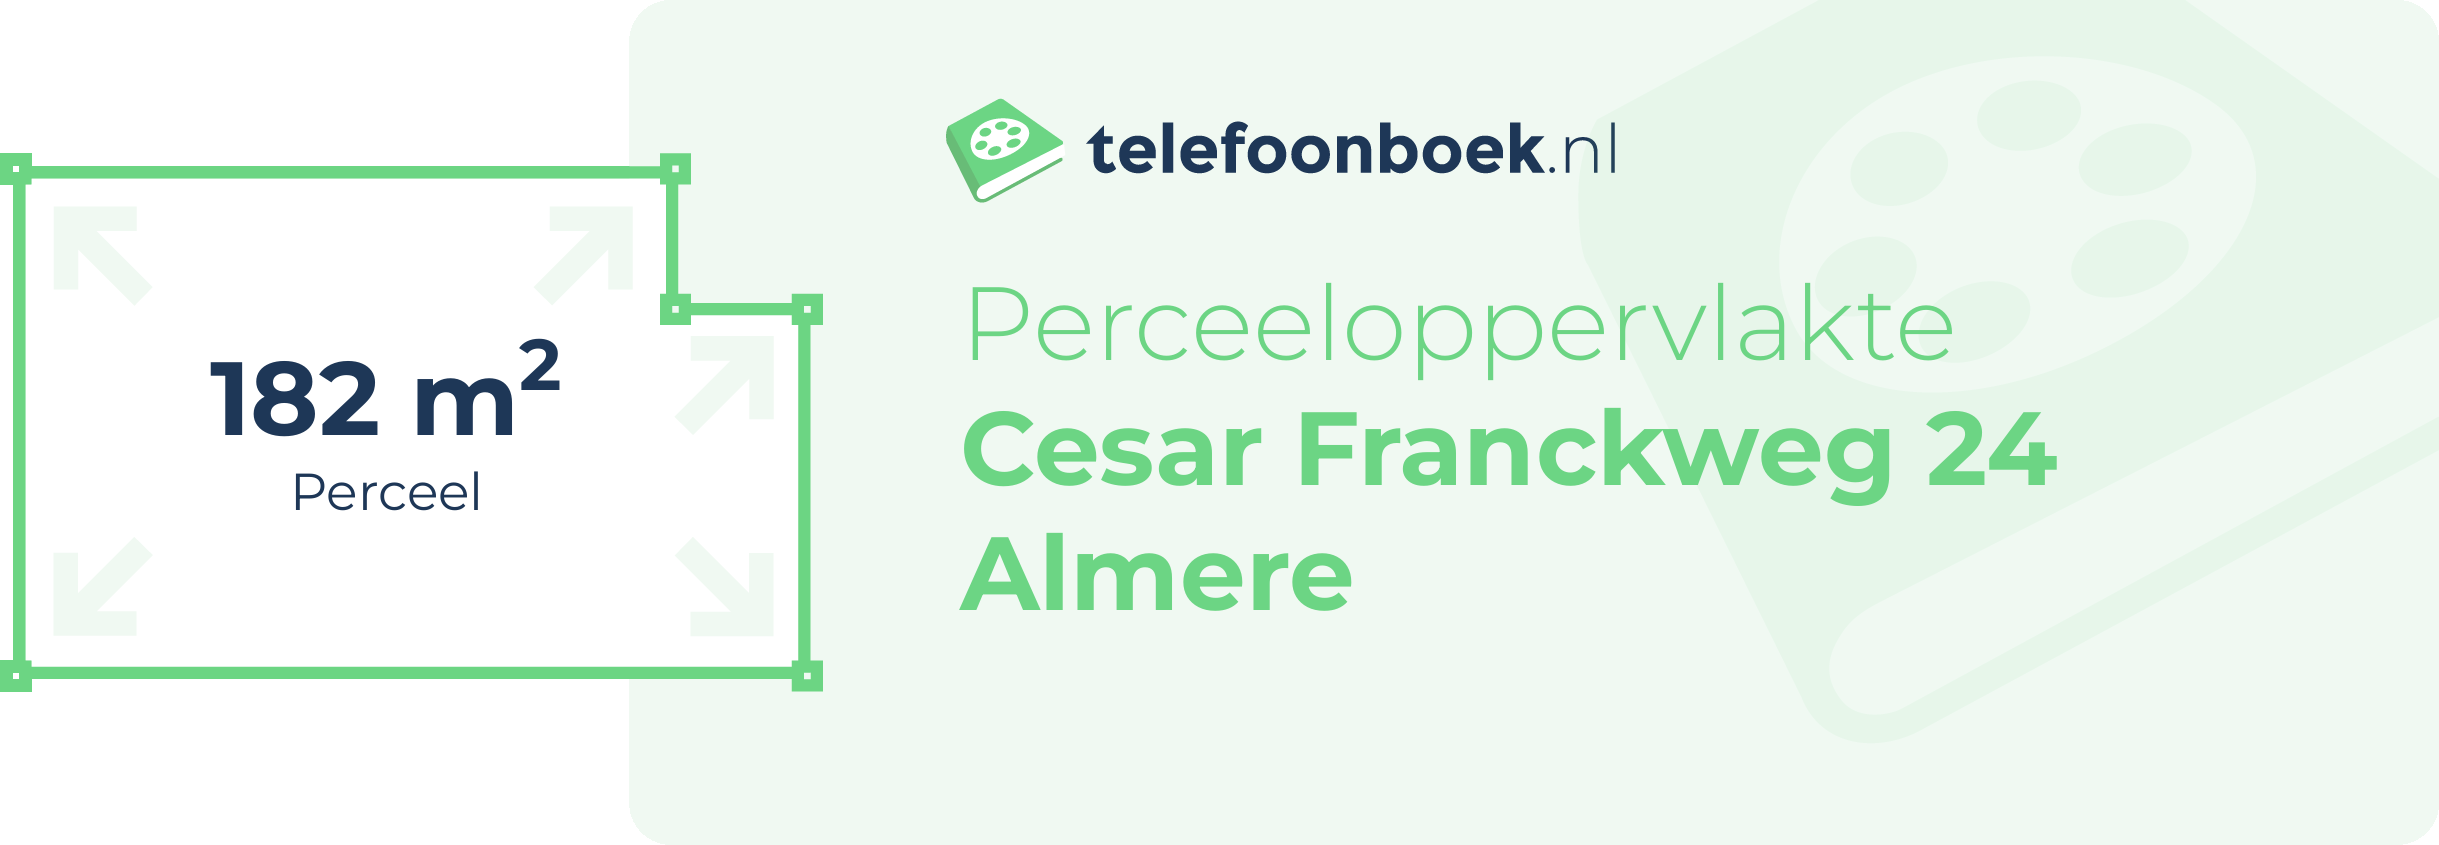 Perceeloppervlakte Cesar Franckweg 24 Almere